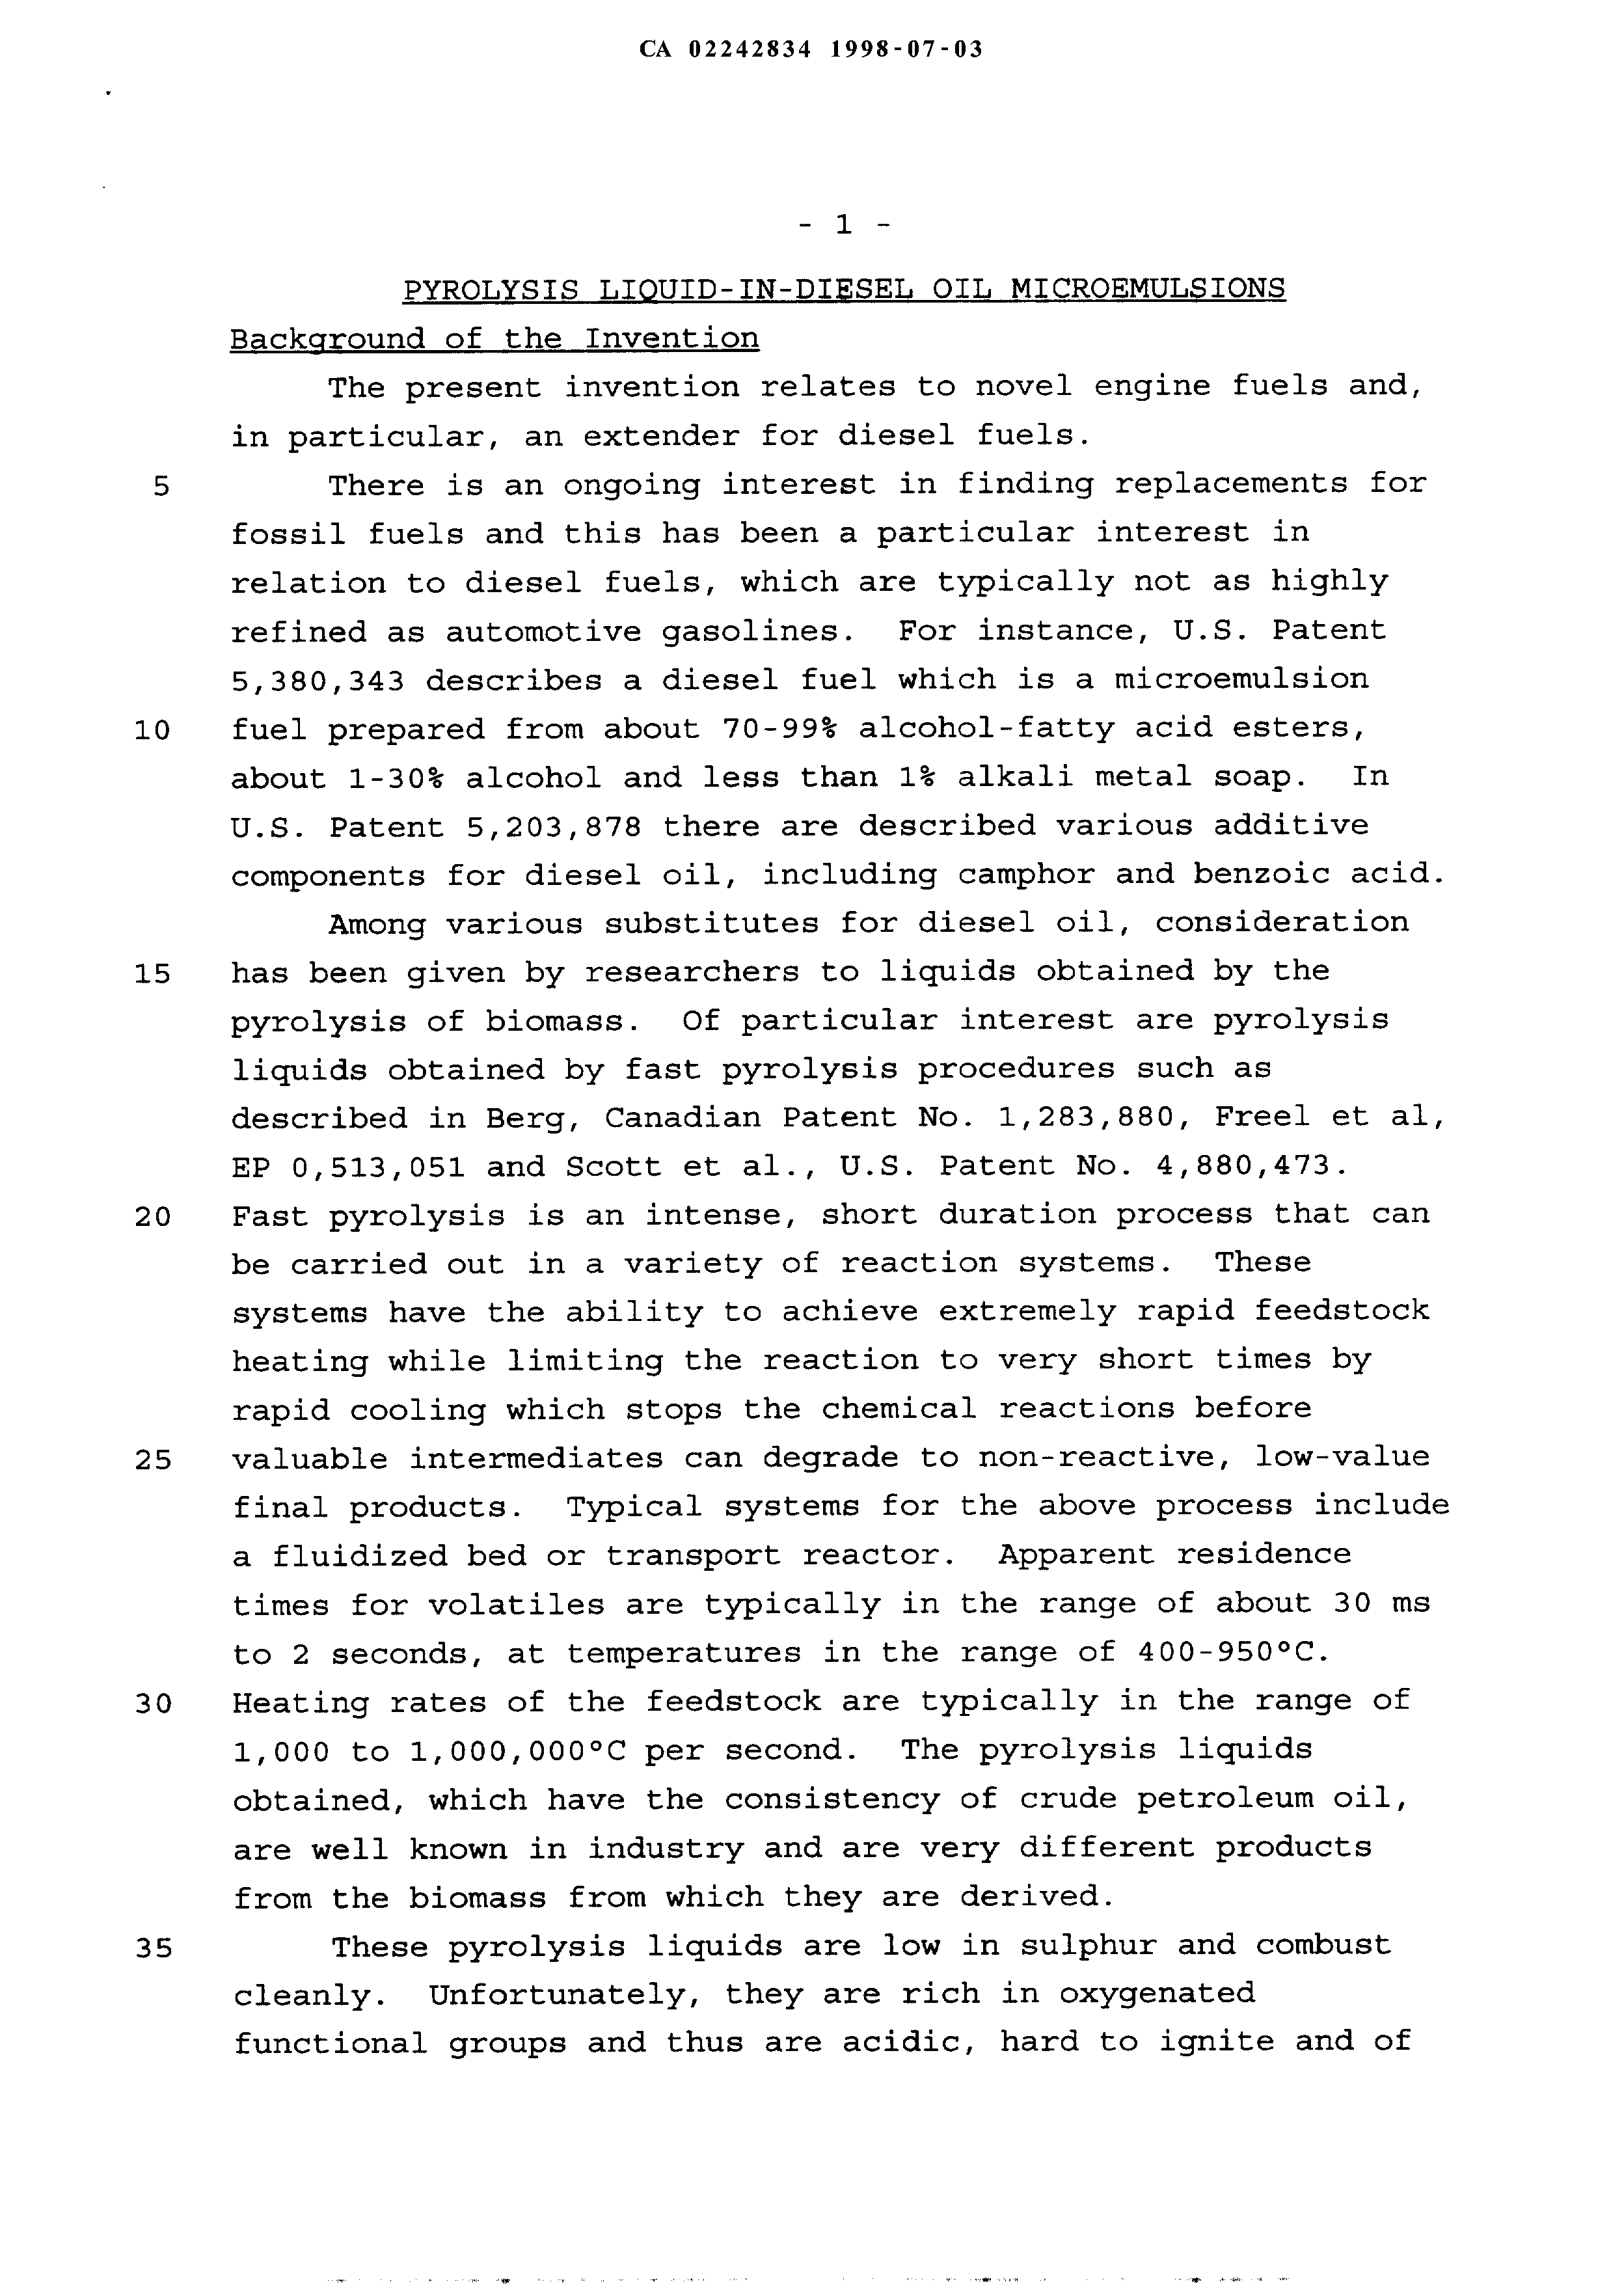 Document de brevet canadien 2242834. Description 19971203. Image 1 de 7